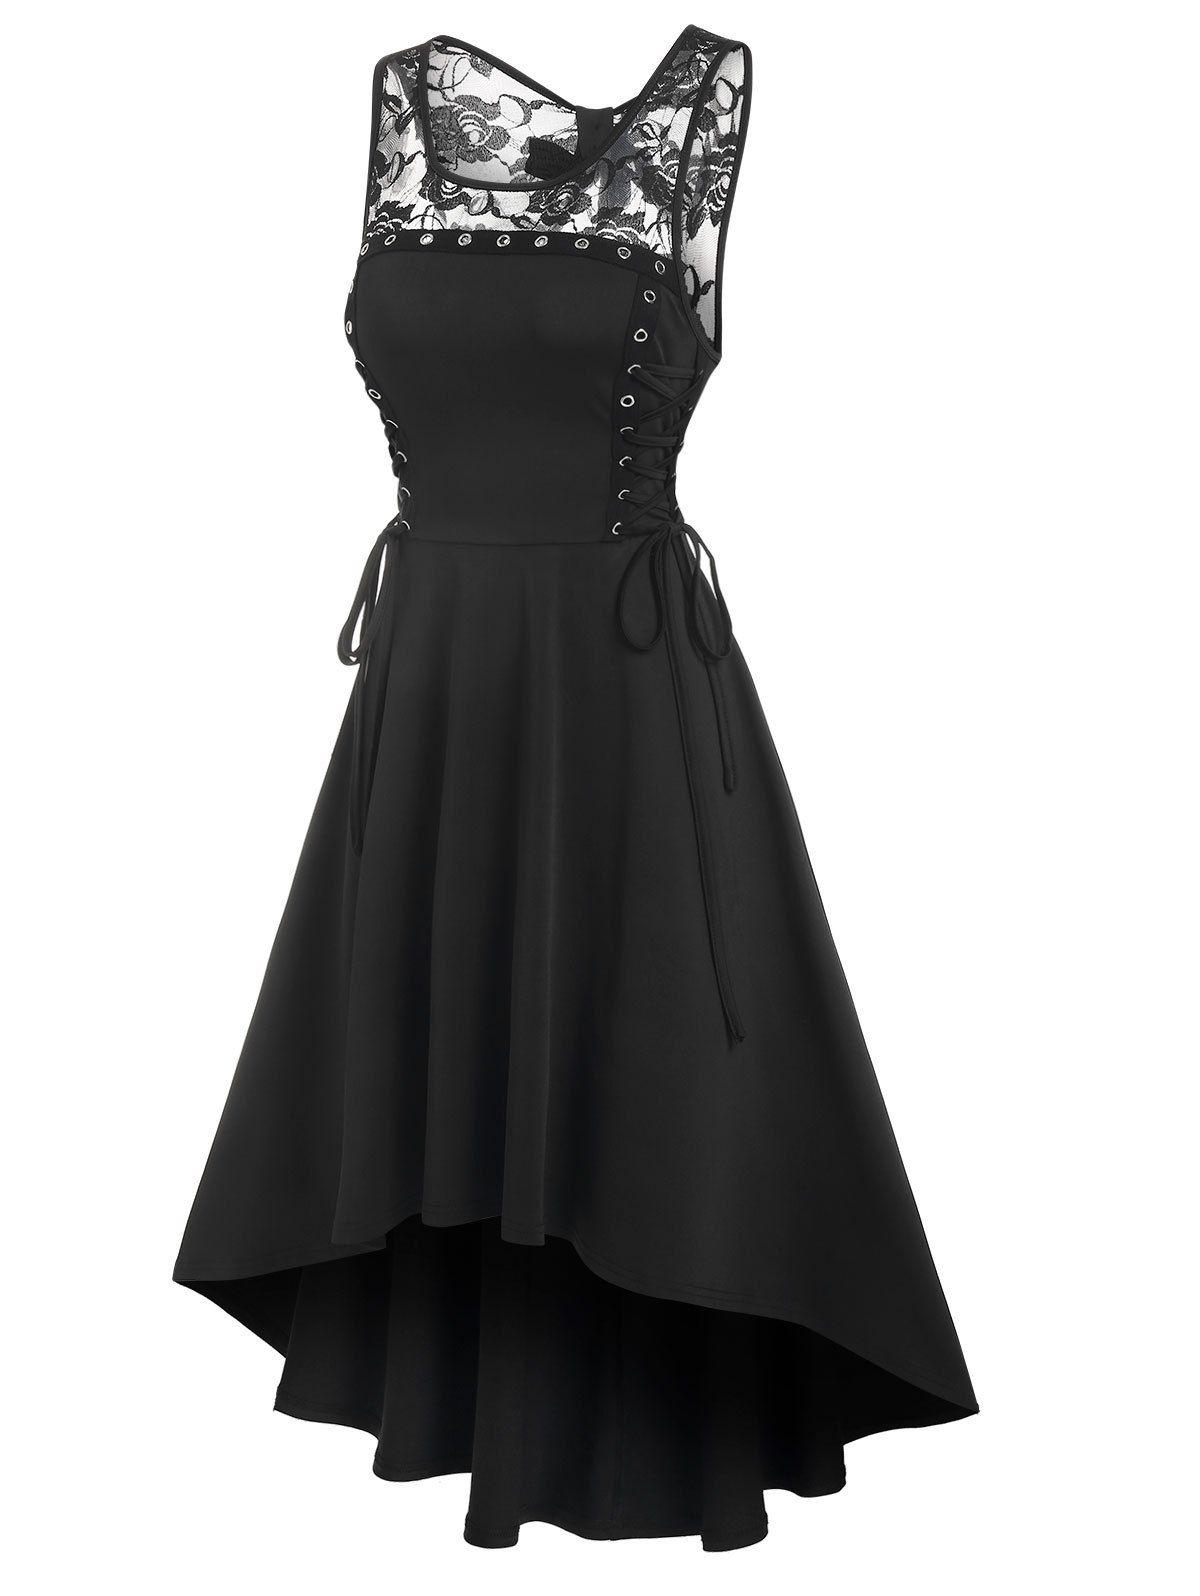 Gothic Dress Lace Up Grommet High Low Dress Flower Lace Panel Bowknot Cutout Midi Dress - BLACK XXXL